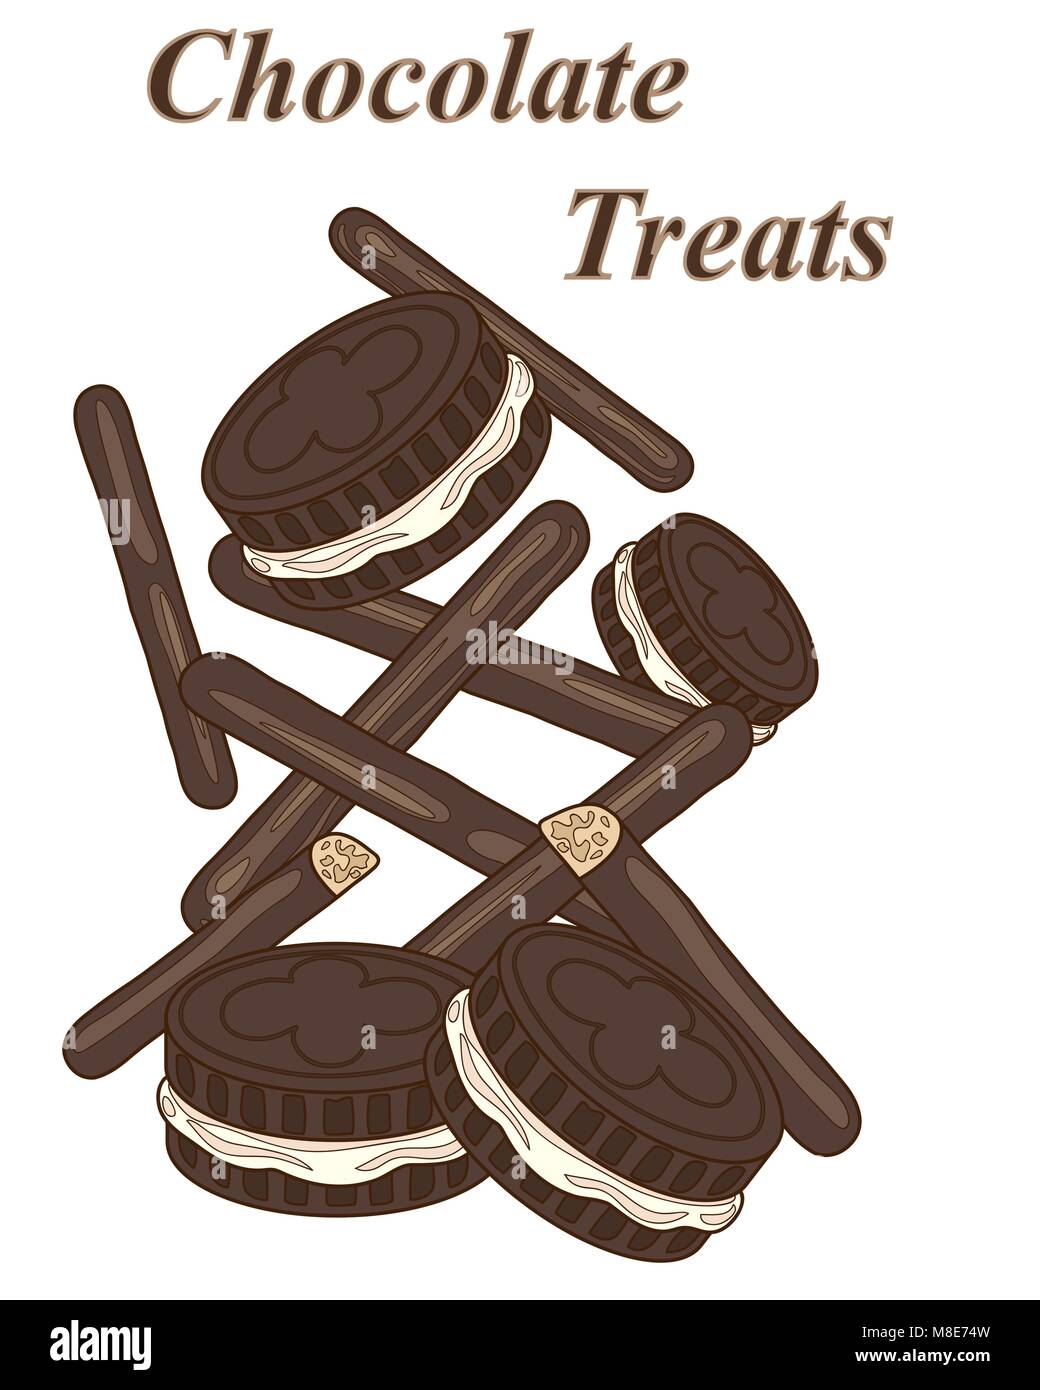 Un vecteur illustration en format eps 8 de crème au chocolat biscuits et les doigts disposés sur un fond blanc Illustration de Vecteur